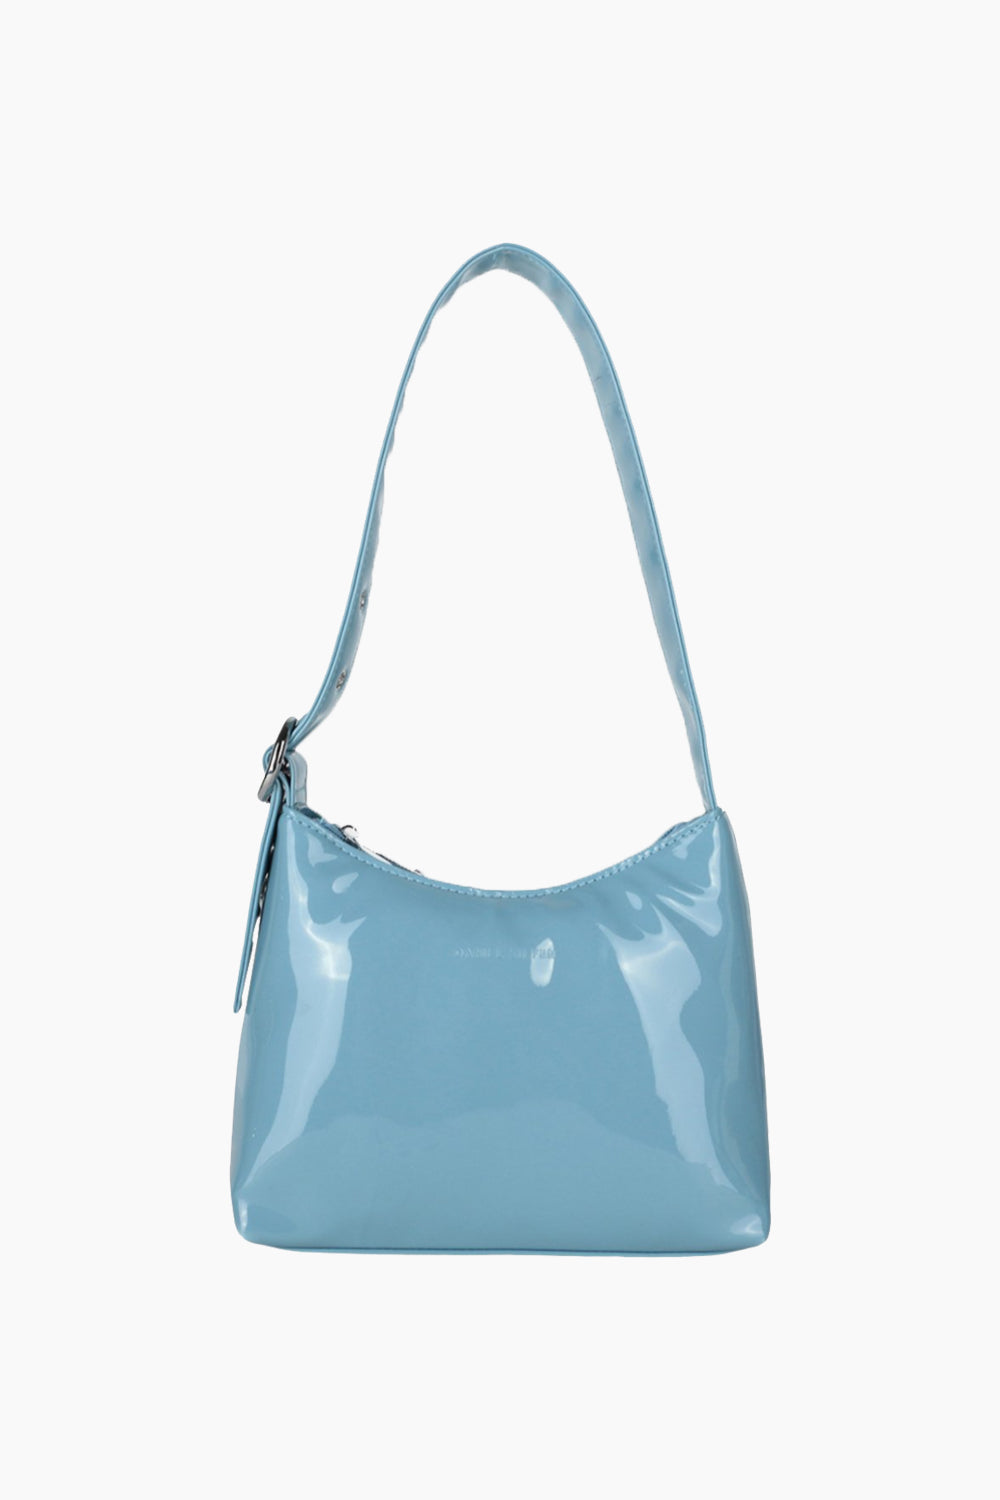 Handbag Neptune Lacquer - Silfen Studio - Lyseblå One Size Daniel Silfen Lyseblå ⋆ DKK